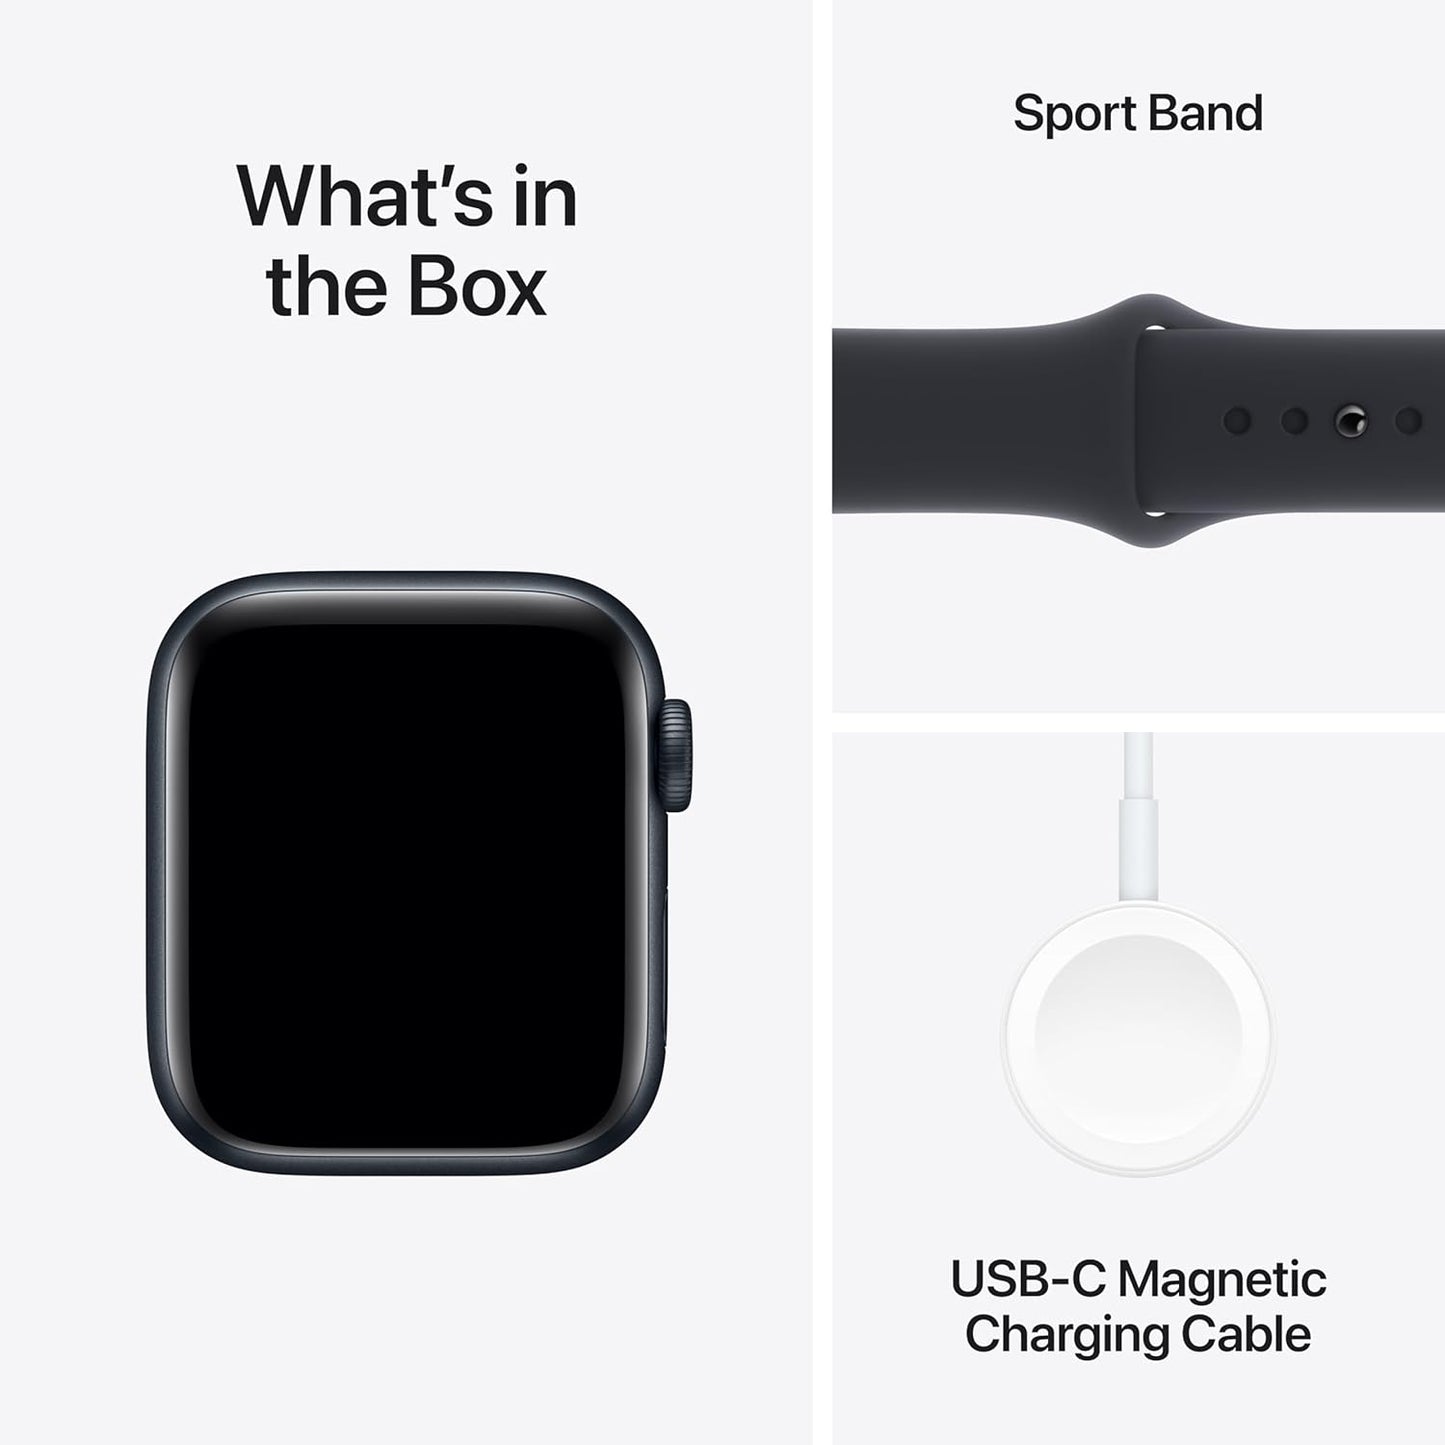 Apple Watch SE (الجيل الثاني) [GPS + Cellular 44mm] ساعة ذكية مع هيكل من الألومنيوم منتصف الليل مع حزام رياضي Midnight M/L. جهاز تتبع اللياقة البدنية والنوم، واكتشاف الأعطال، ومراقبة معدل ضربات القلب 